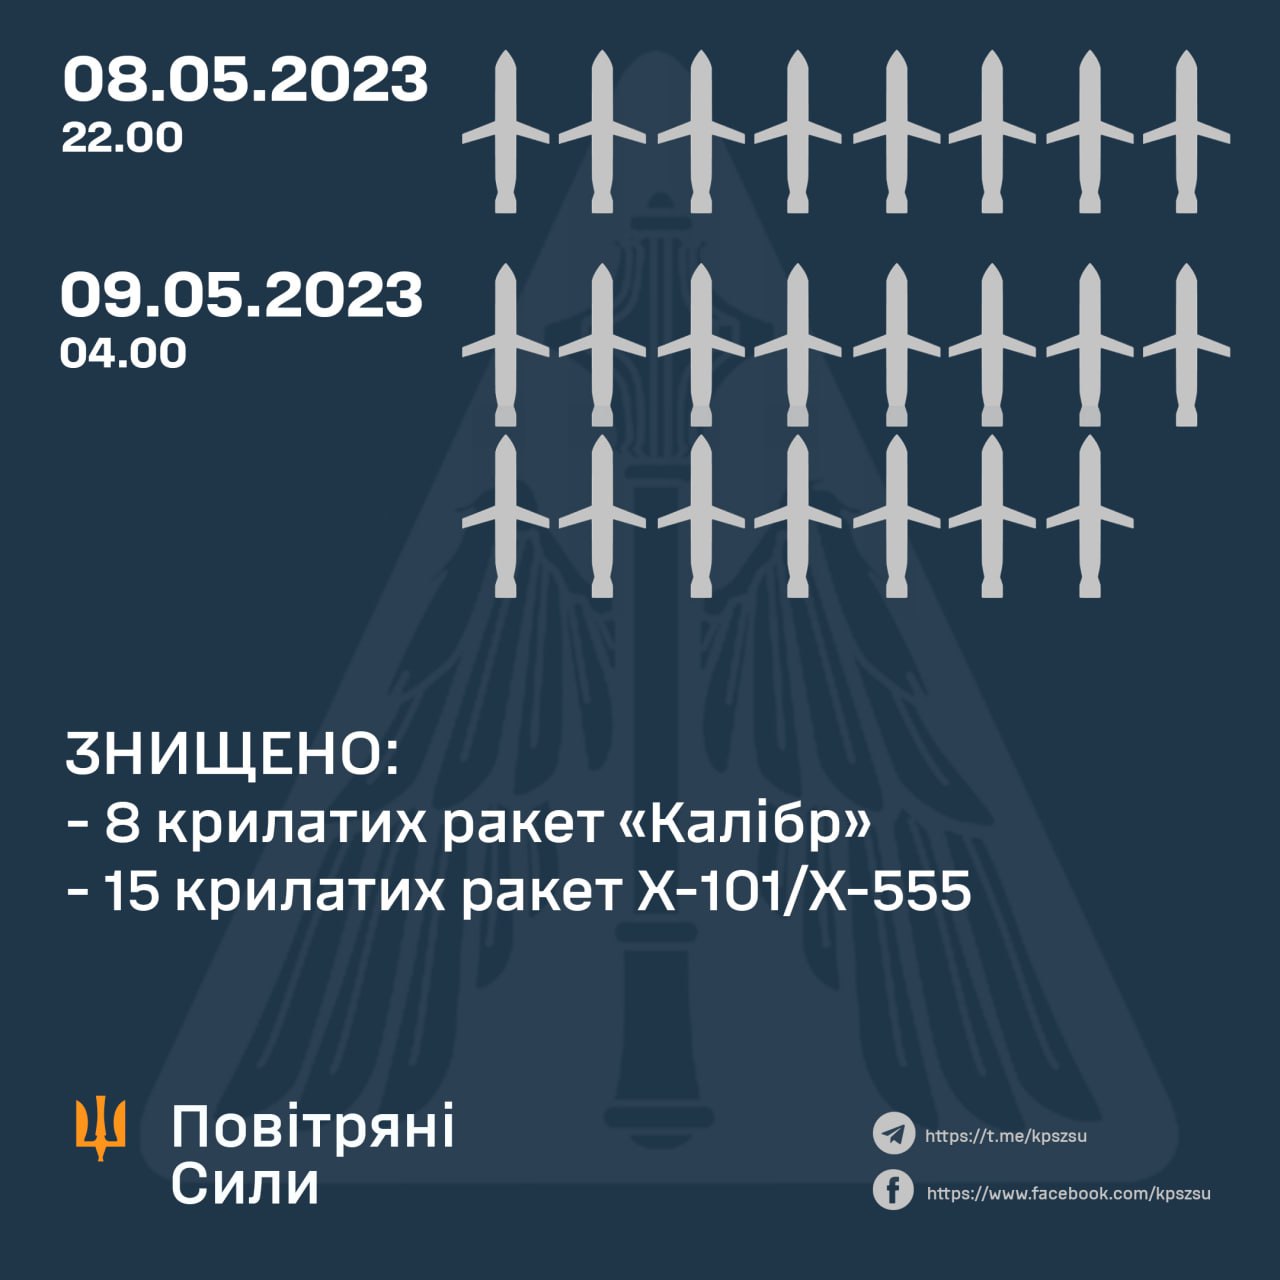 25 крылатых ракет выпустила Россия по городам Украины в ночь с 8 на 9 мая